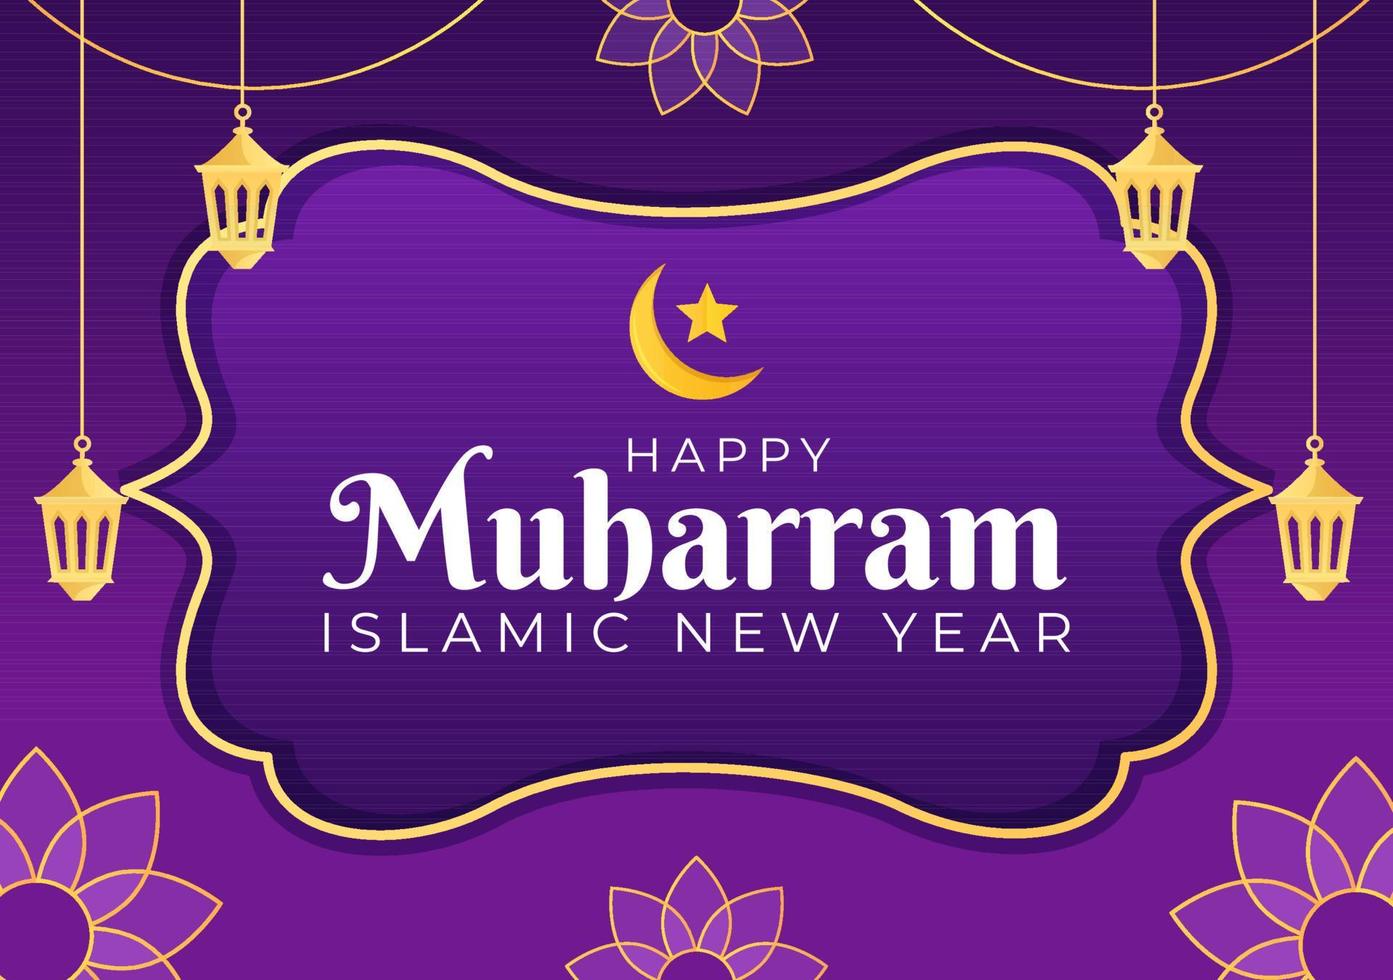 islamischer neujahrstag oder 1 muharram vektorhintergrundillustration der feiernden muslimischen familie kann für grußkarte oder einladung verwendet werden vektor